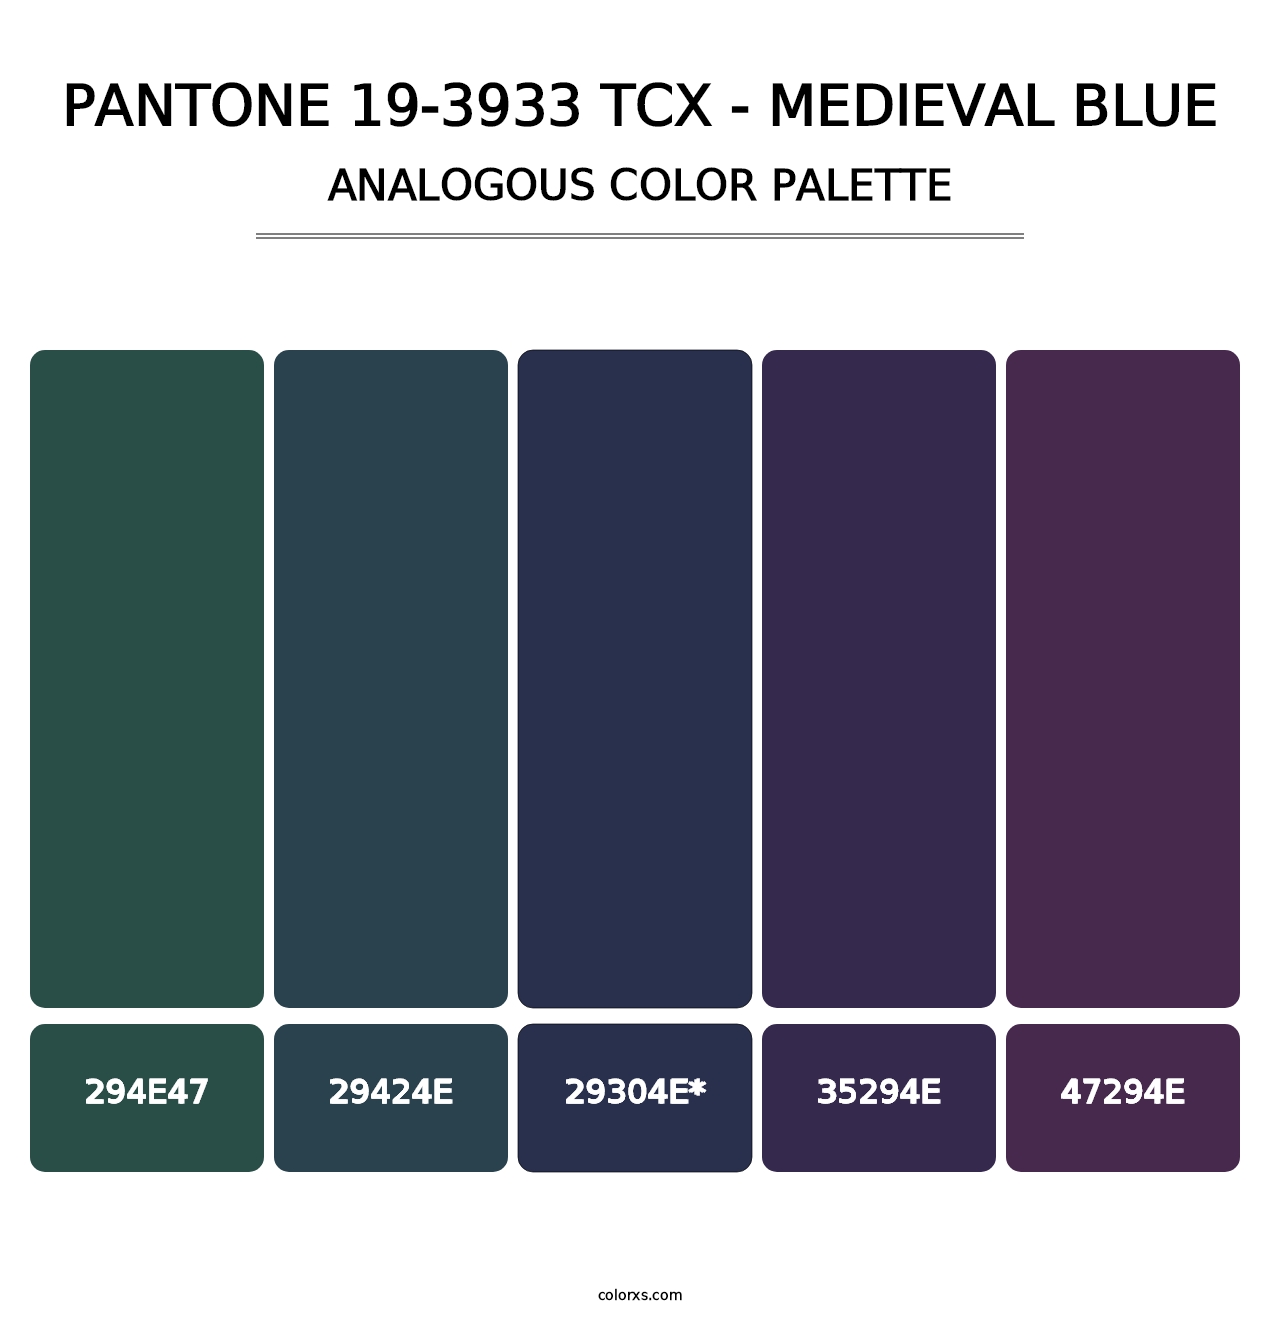 PANTONE 19-3933 TCX - Medieval Blue - Analogous Color Palette